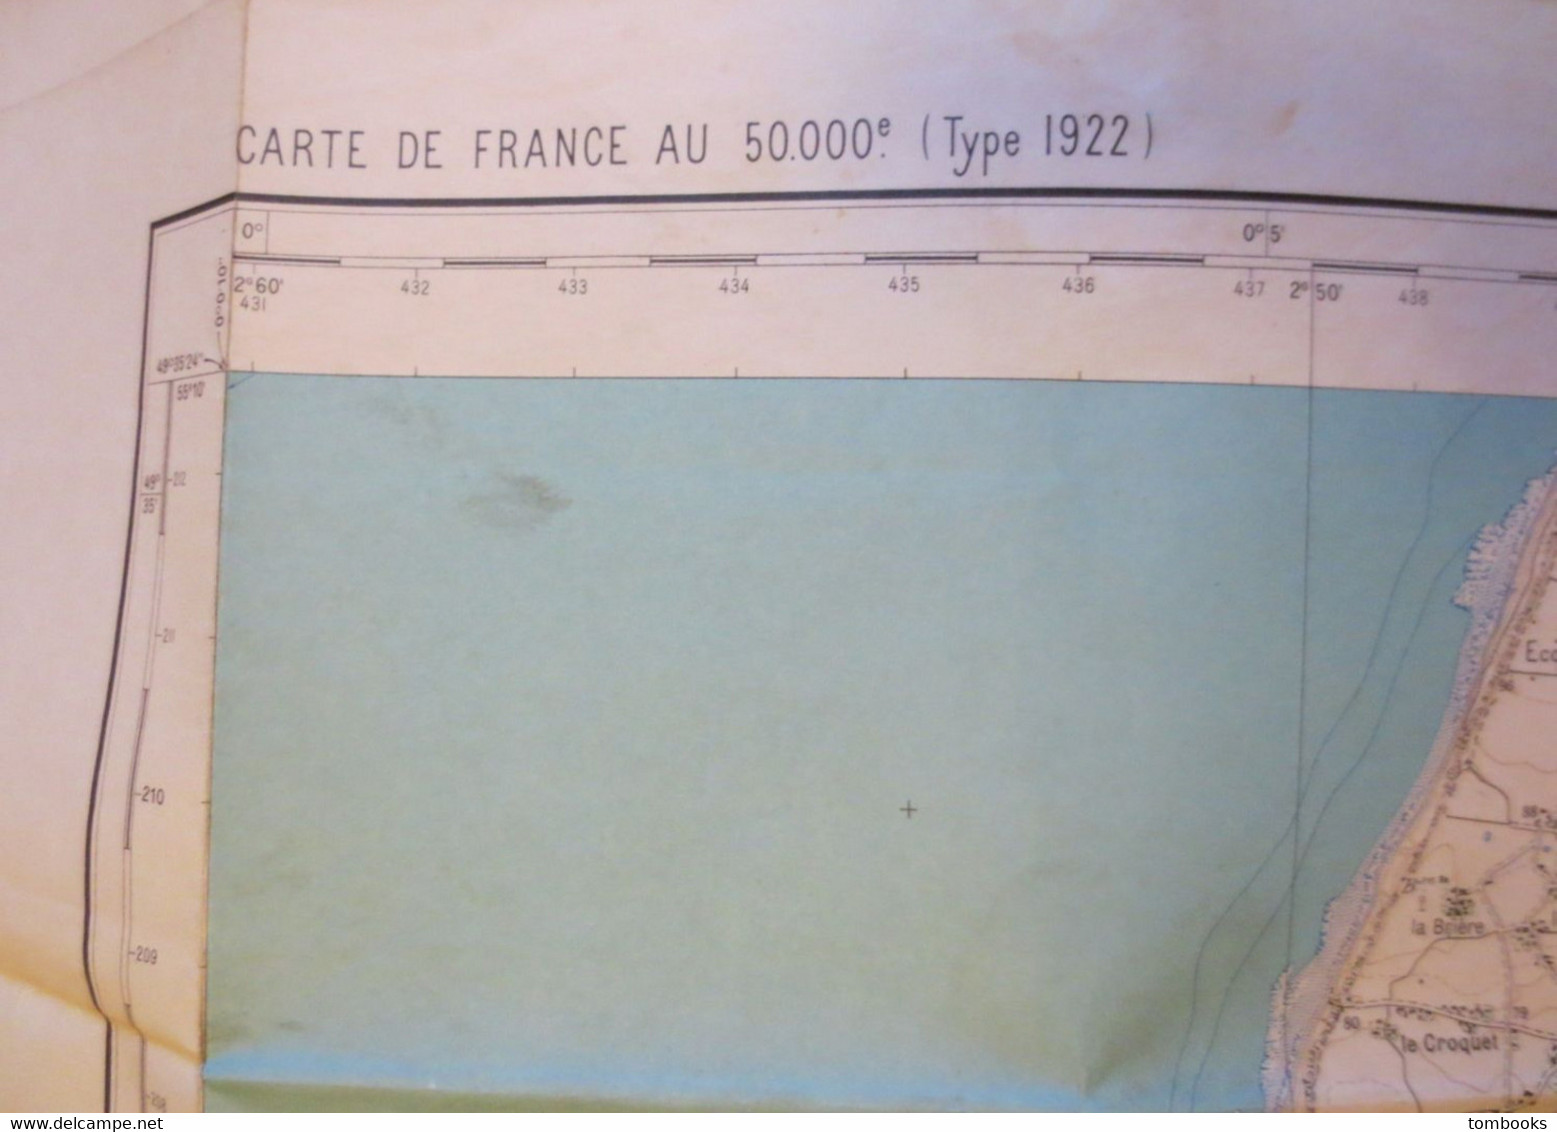 Le Havre - Plan Dépliant Et Environs Du Havre - Projection Lambert - 1957 - B.E - - Other Plans